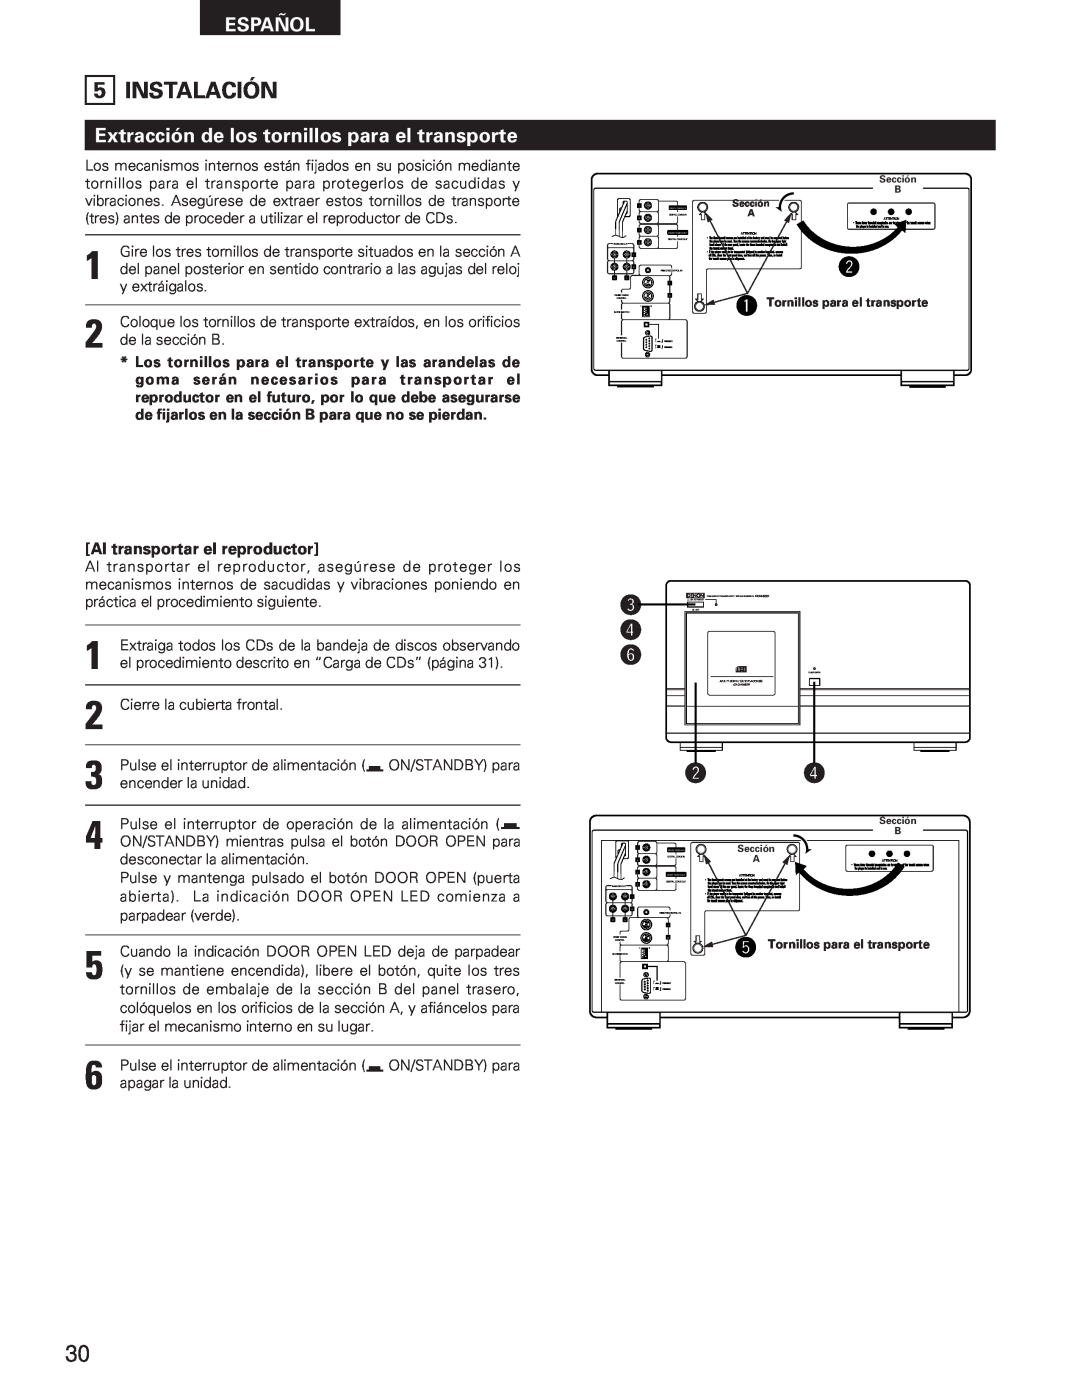 Denon DCM-5001 manual Instalación, Extracción de los tornillos para el transporte, Al transportar el reproductor, Español 